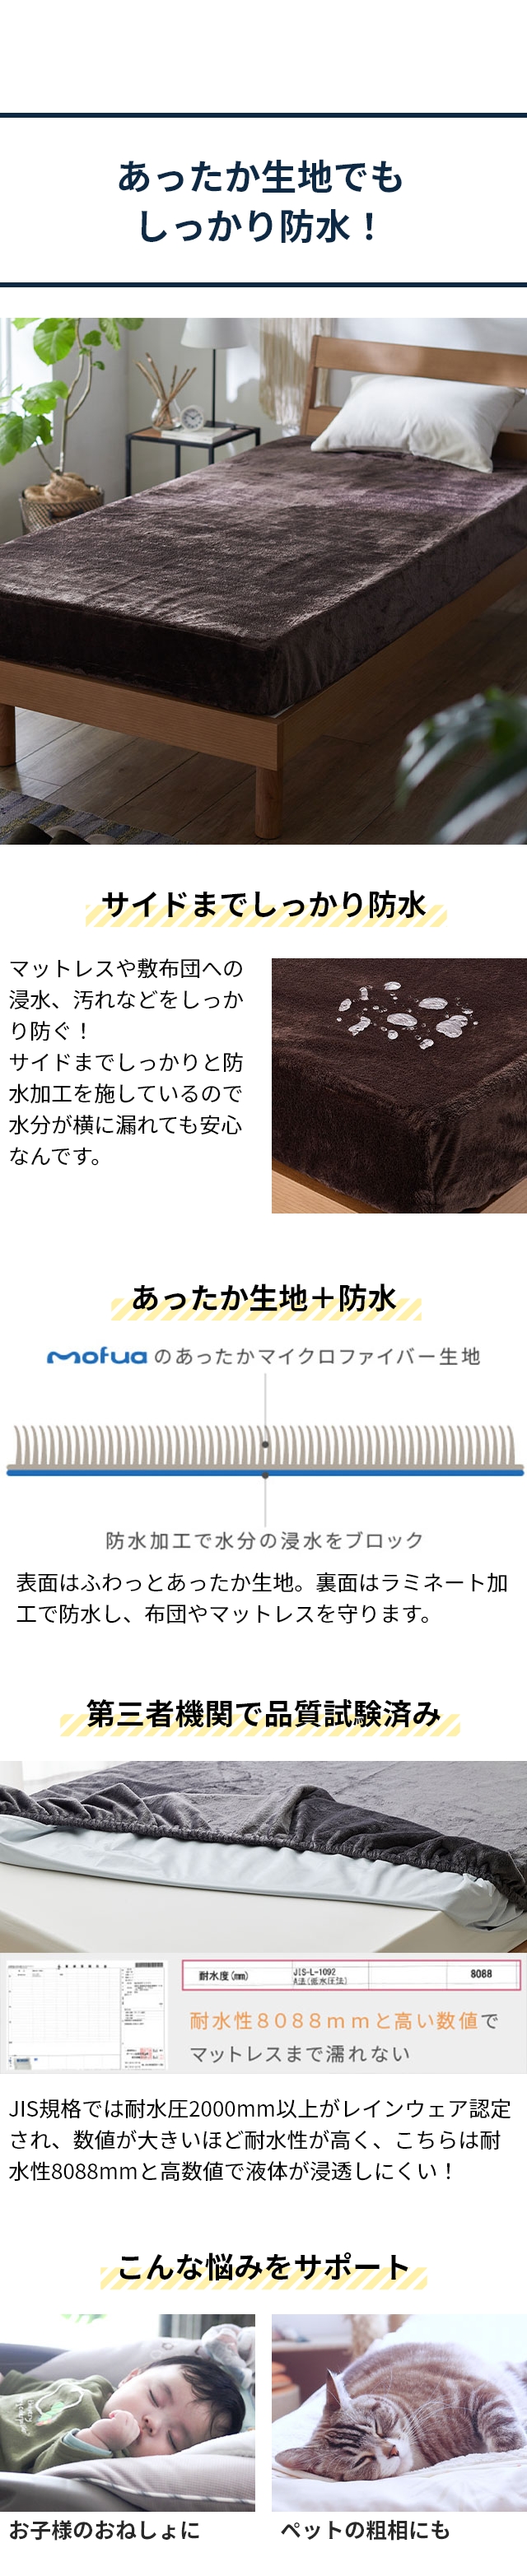 mofua (モフア) プレミアムマイクロファイバー あったかサイドまでしっかり防水ボックスシーツ D ダブル